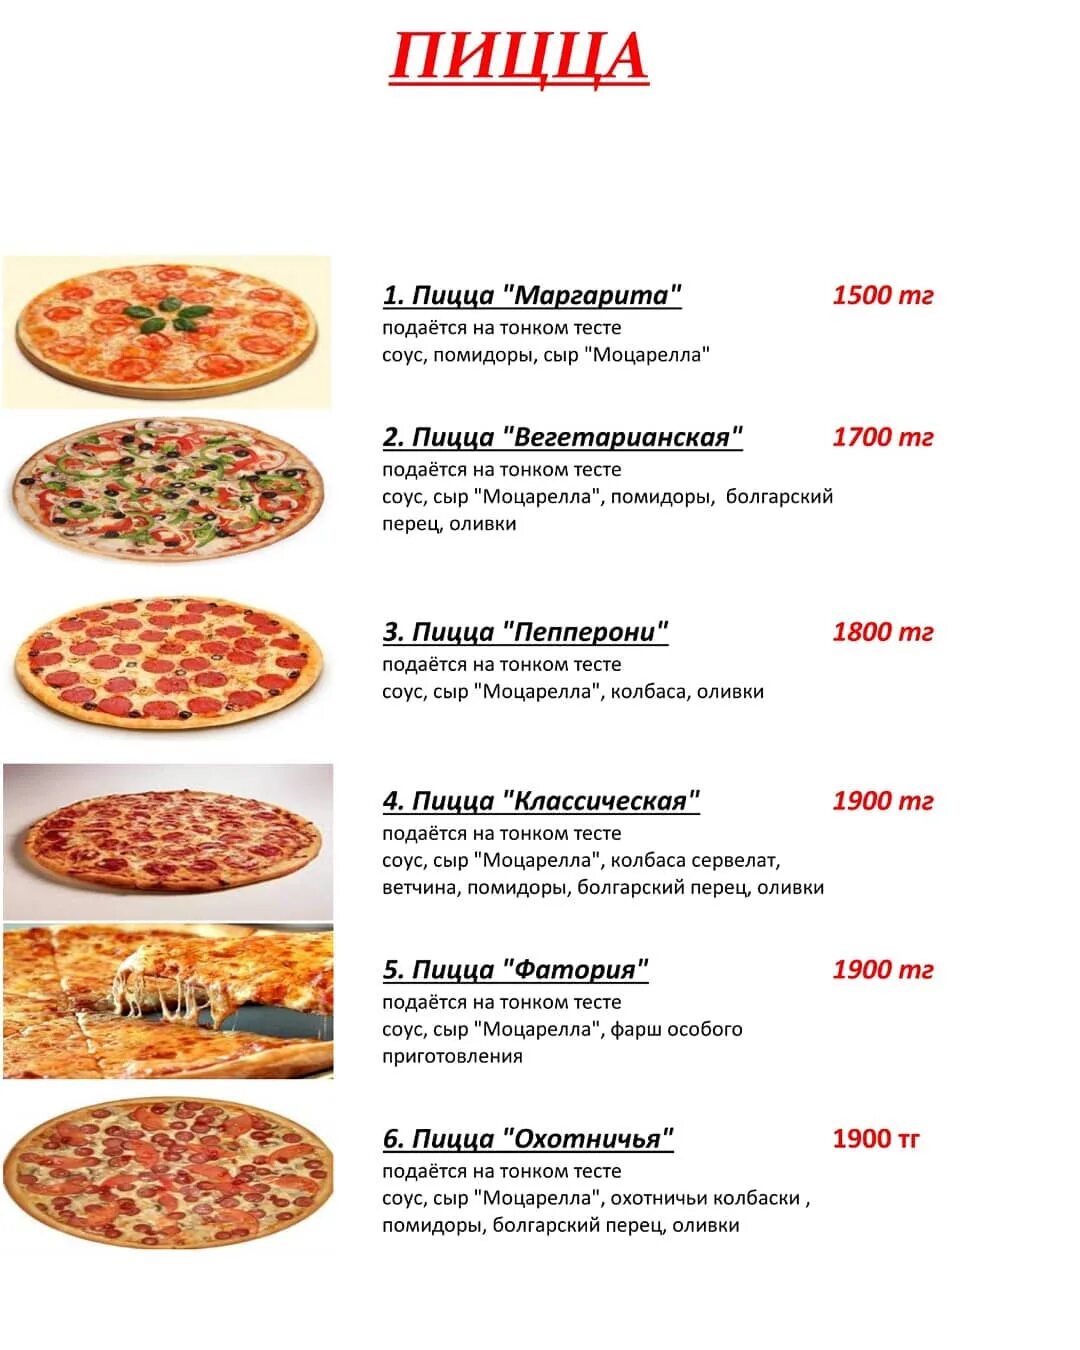 Рецепт пиццы ингредиенты. Калорийность пиццы пепперони.